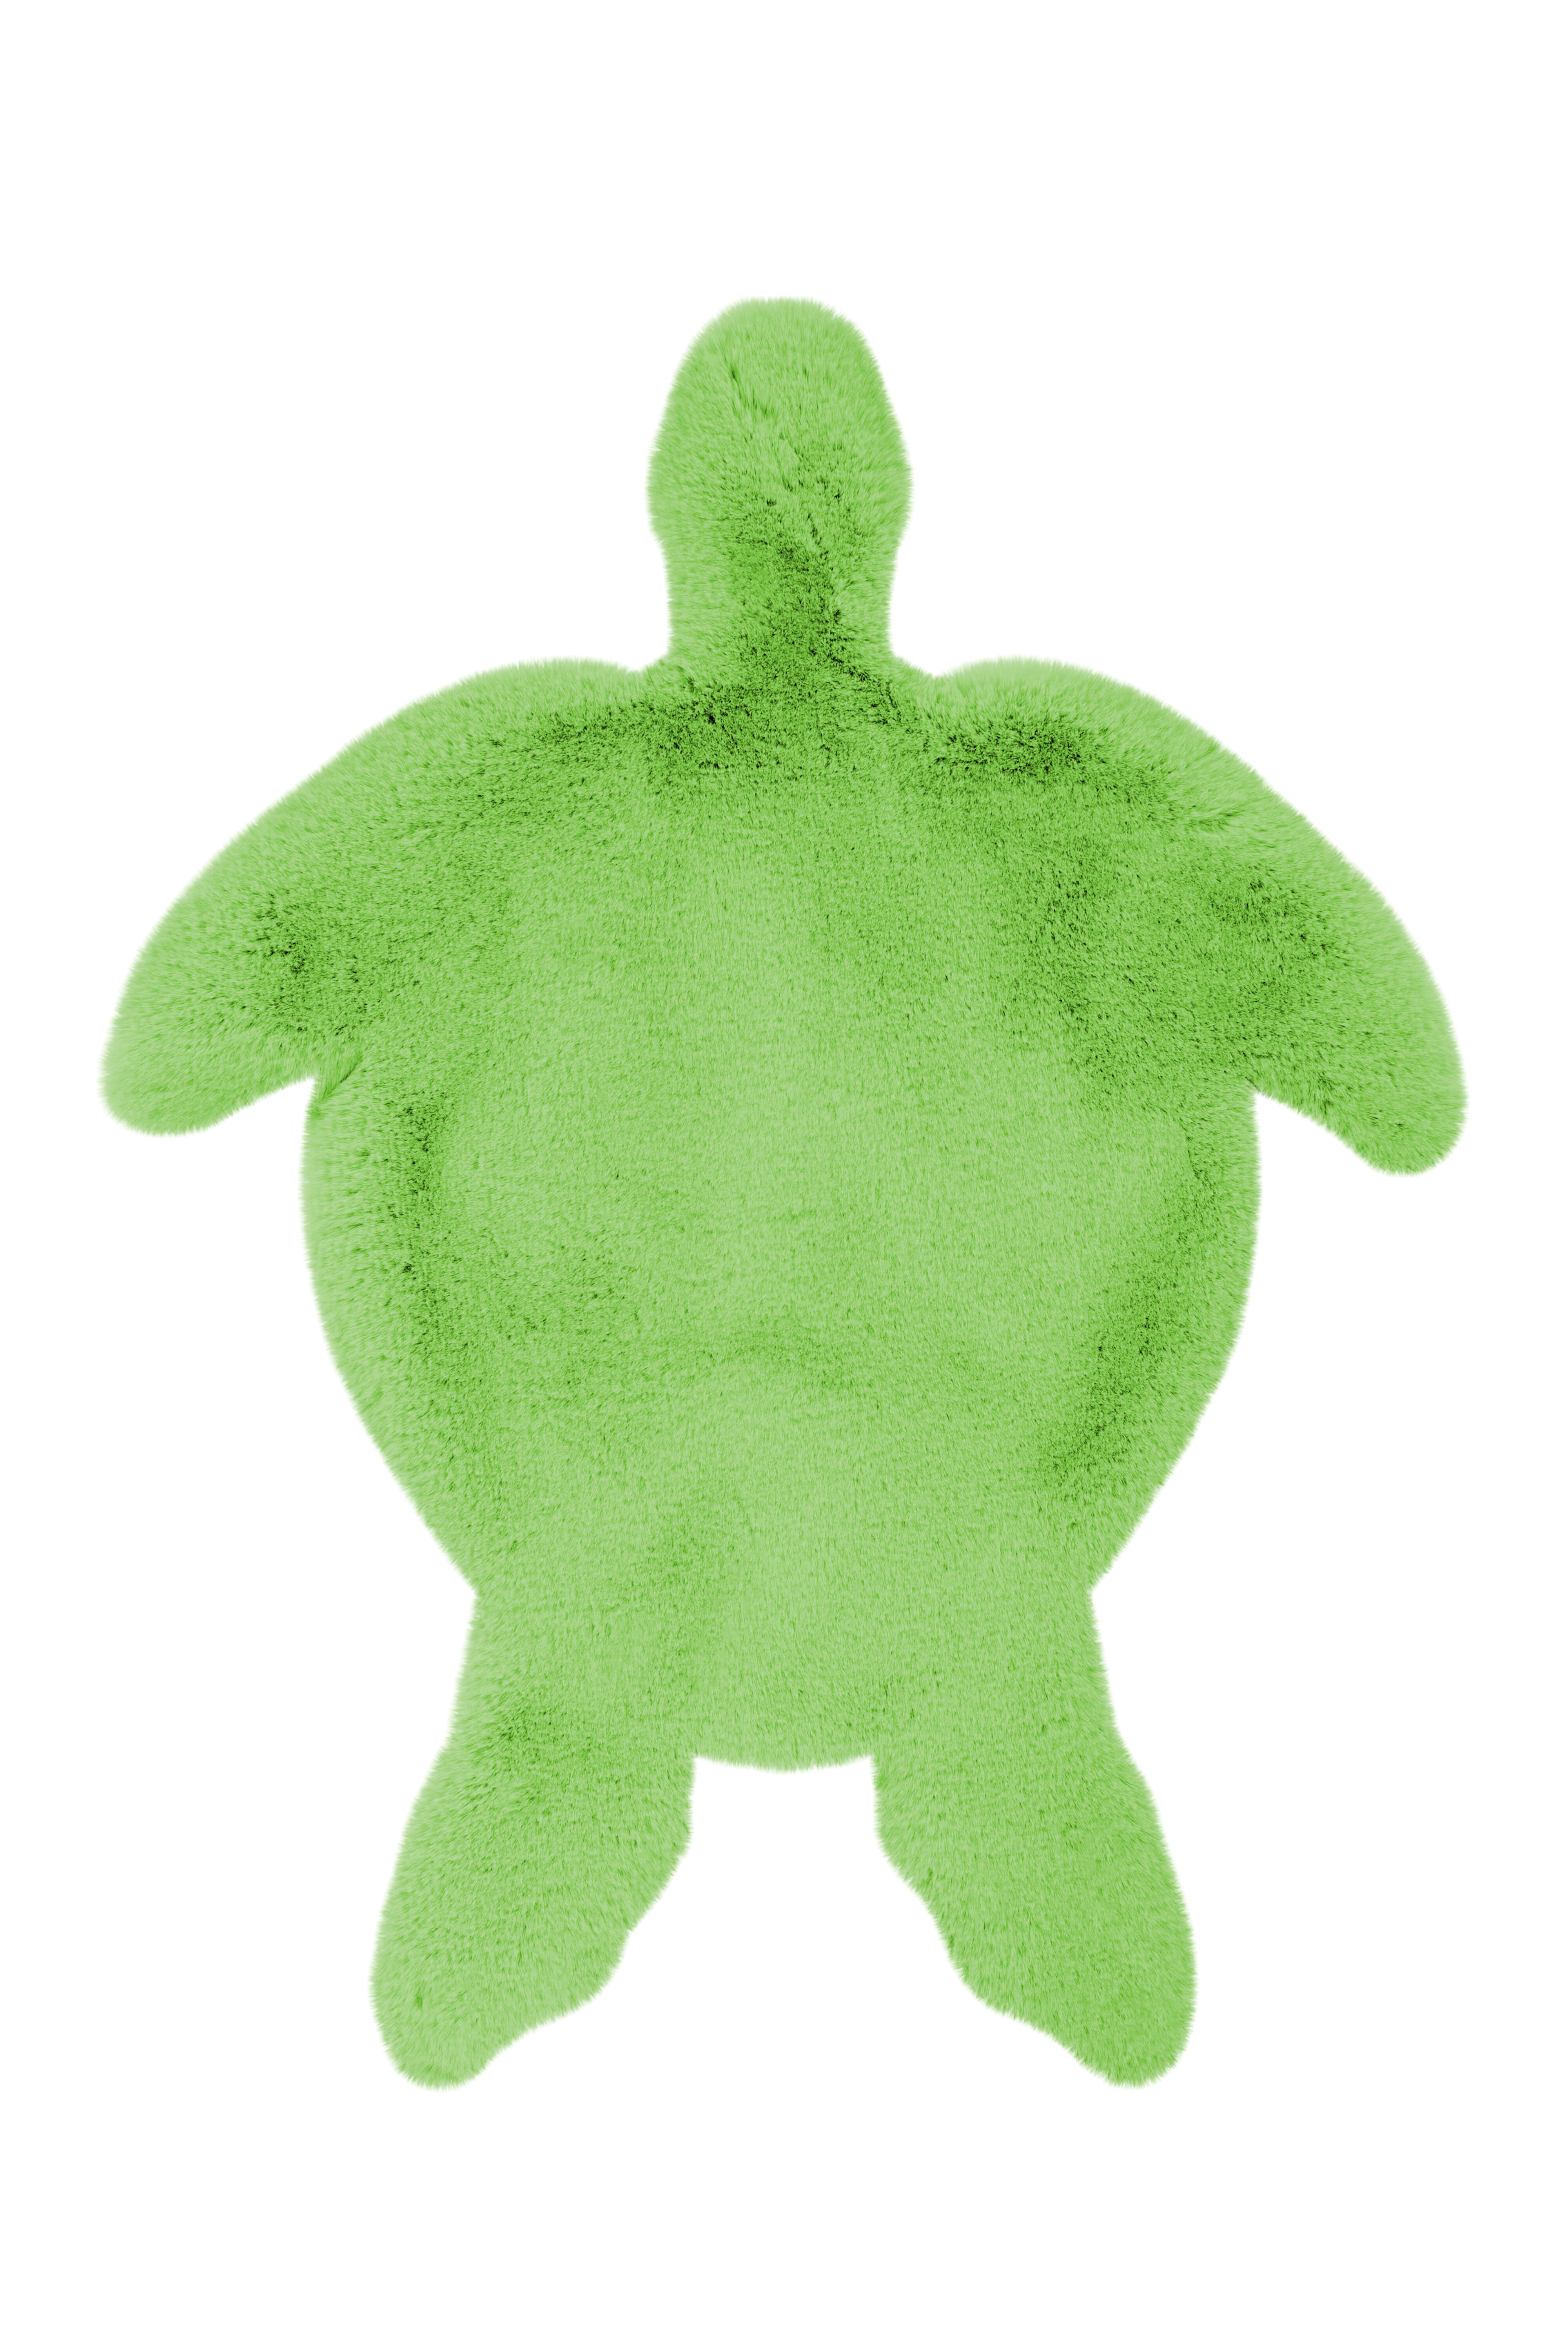 Kayoom Vloerkleed 'Schildpad' kleur Groen, 68 x 90cm